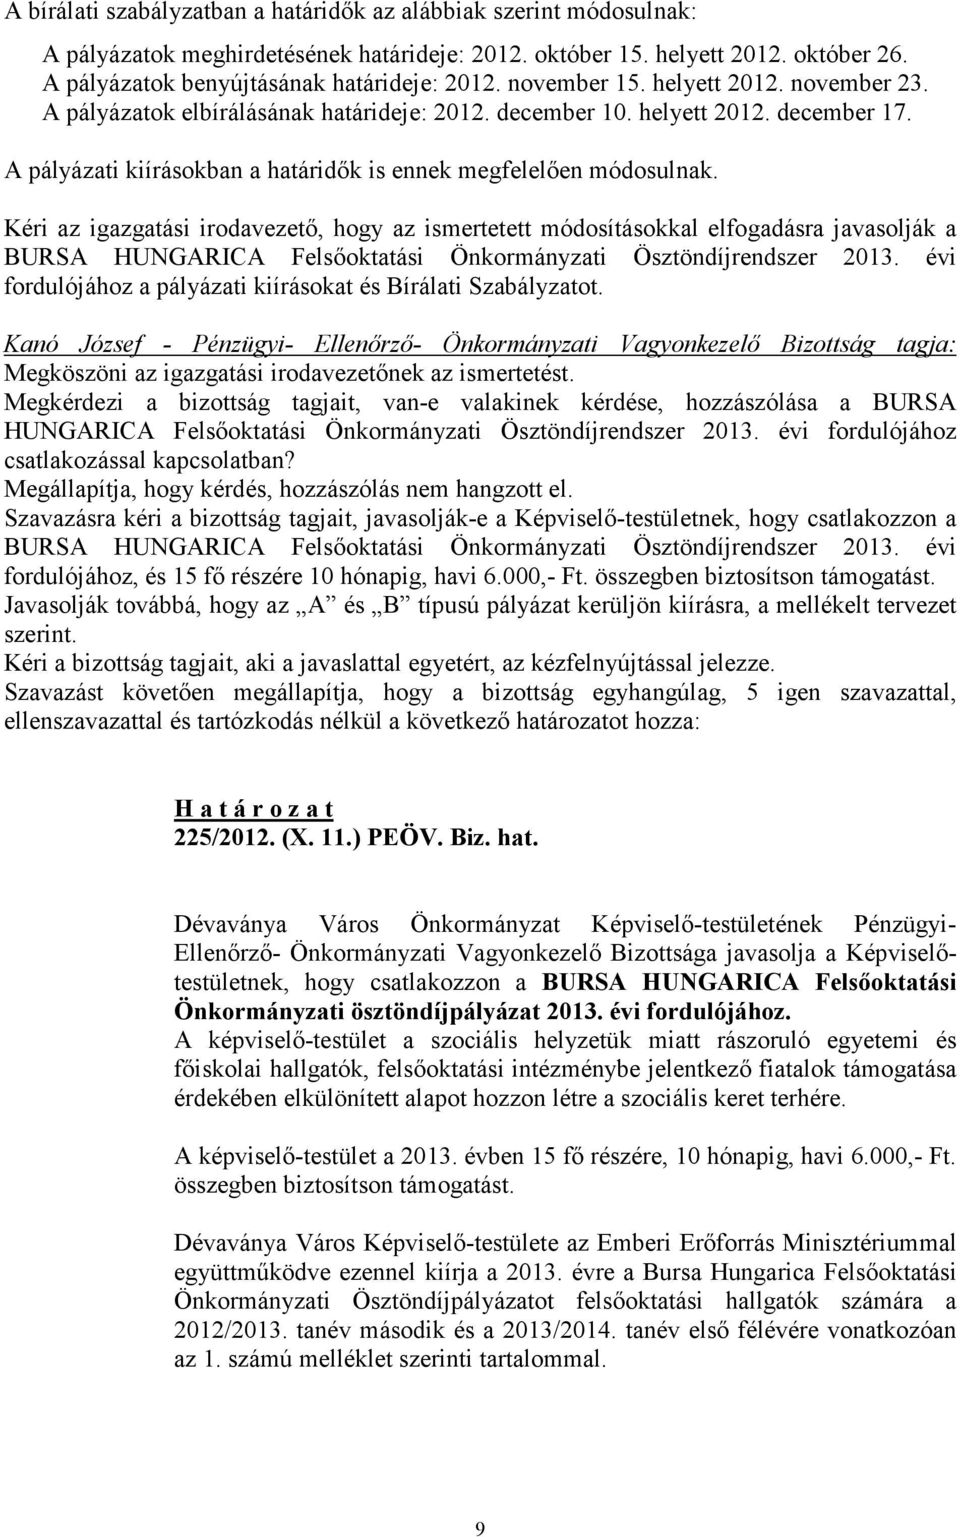 Kéri az igazgatási irodavezetı, hogy az ismertetett módosításokkal elfogadásra javasolják a BURSA HUNGARICA Felsıoktatási Önkormányzati Ösztöndíjrendszer 2013.